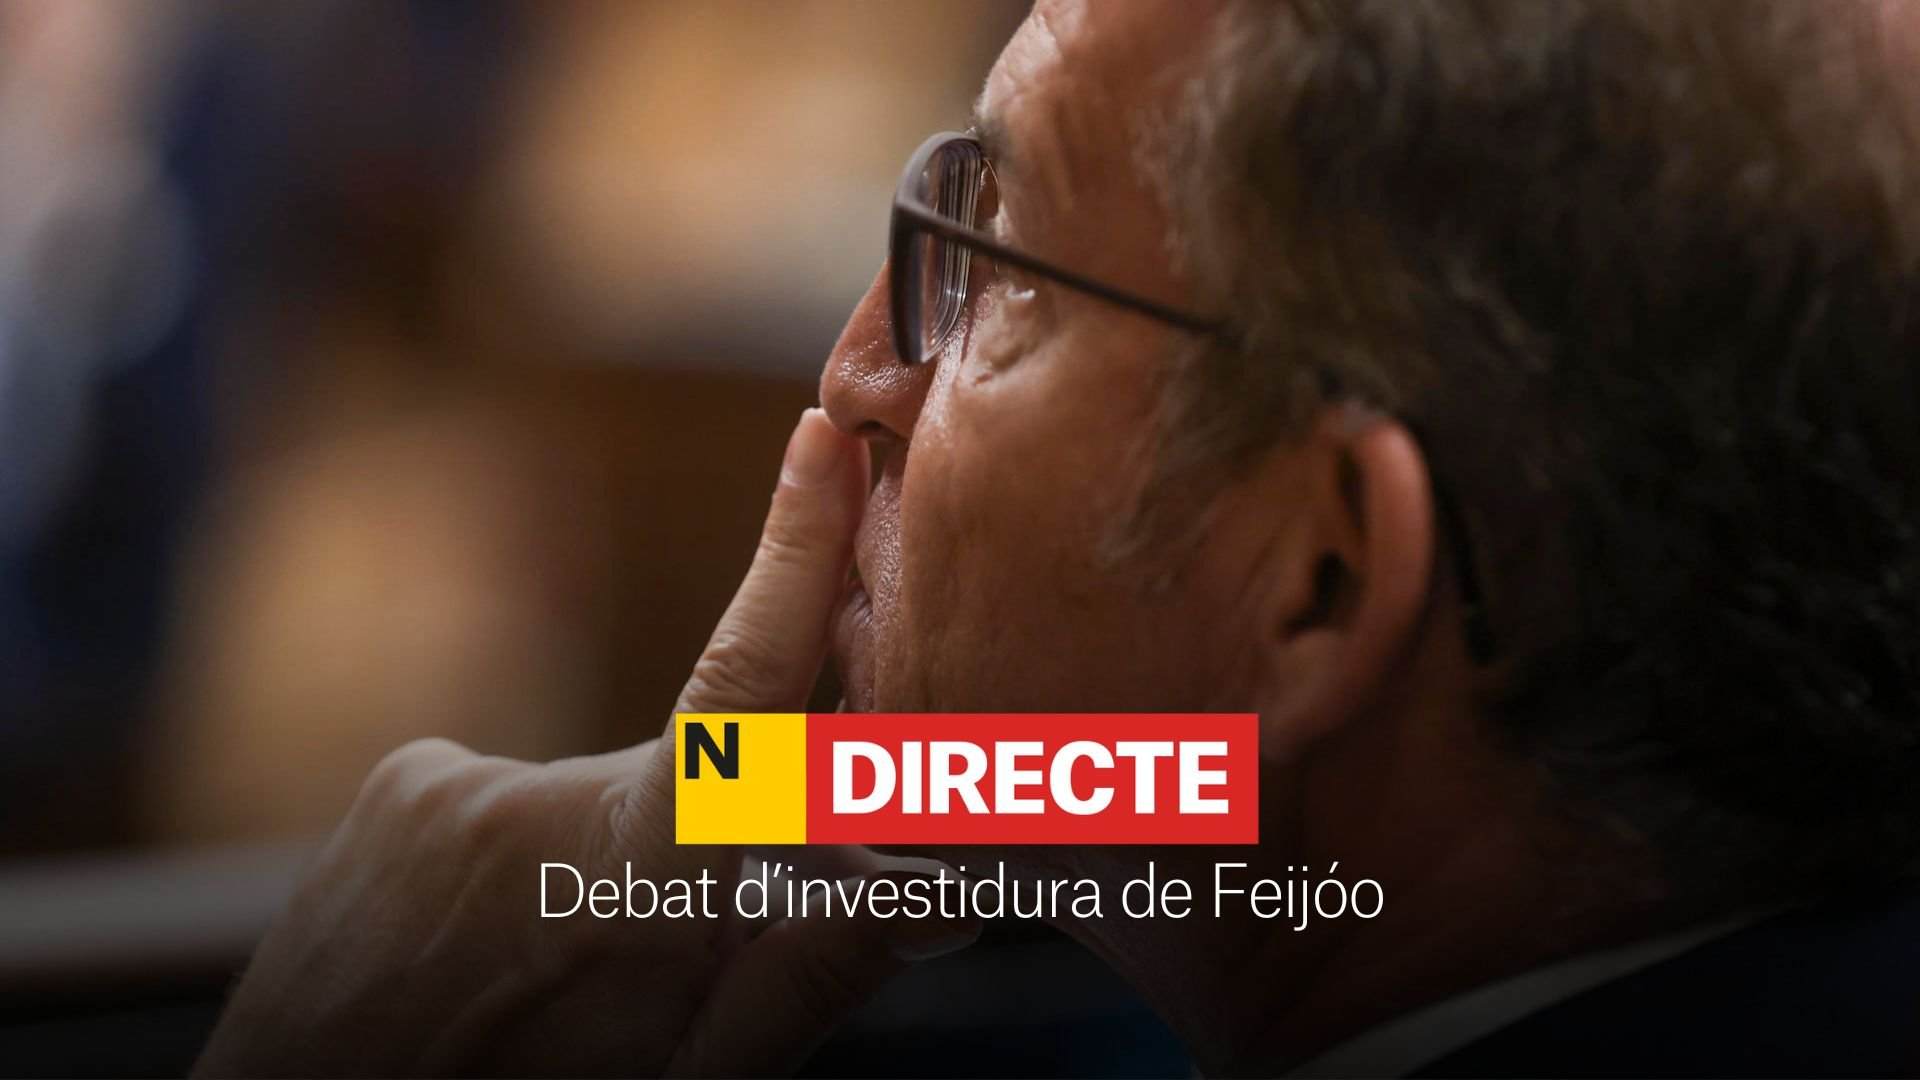 Investidura de Feijóo,DIRECTO | Discursos y última hora del debate en el Congreso de los Diputados